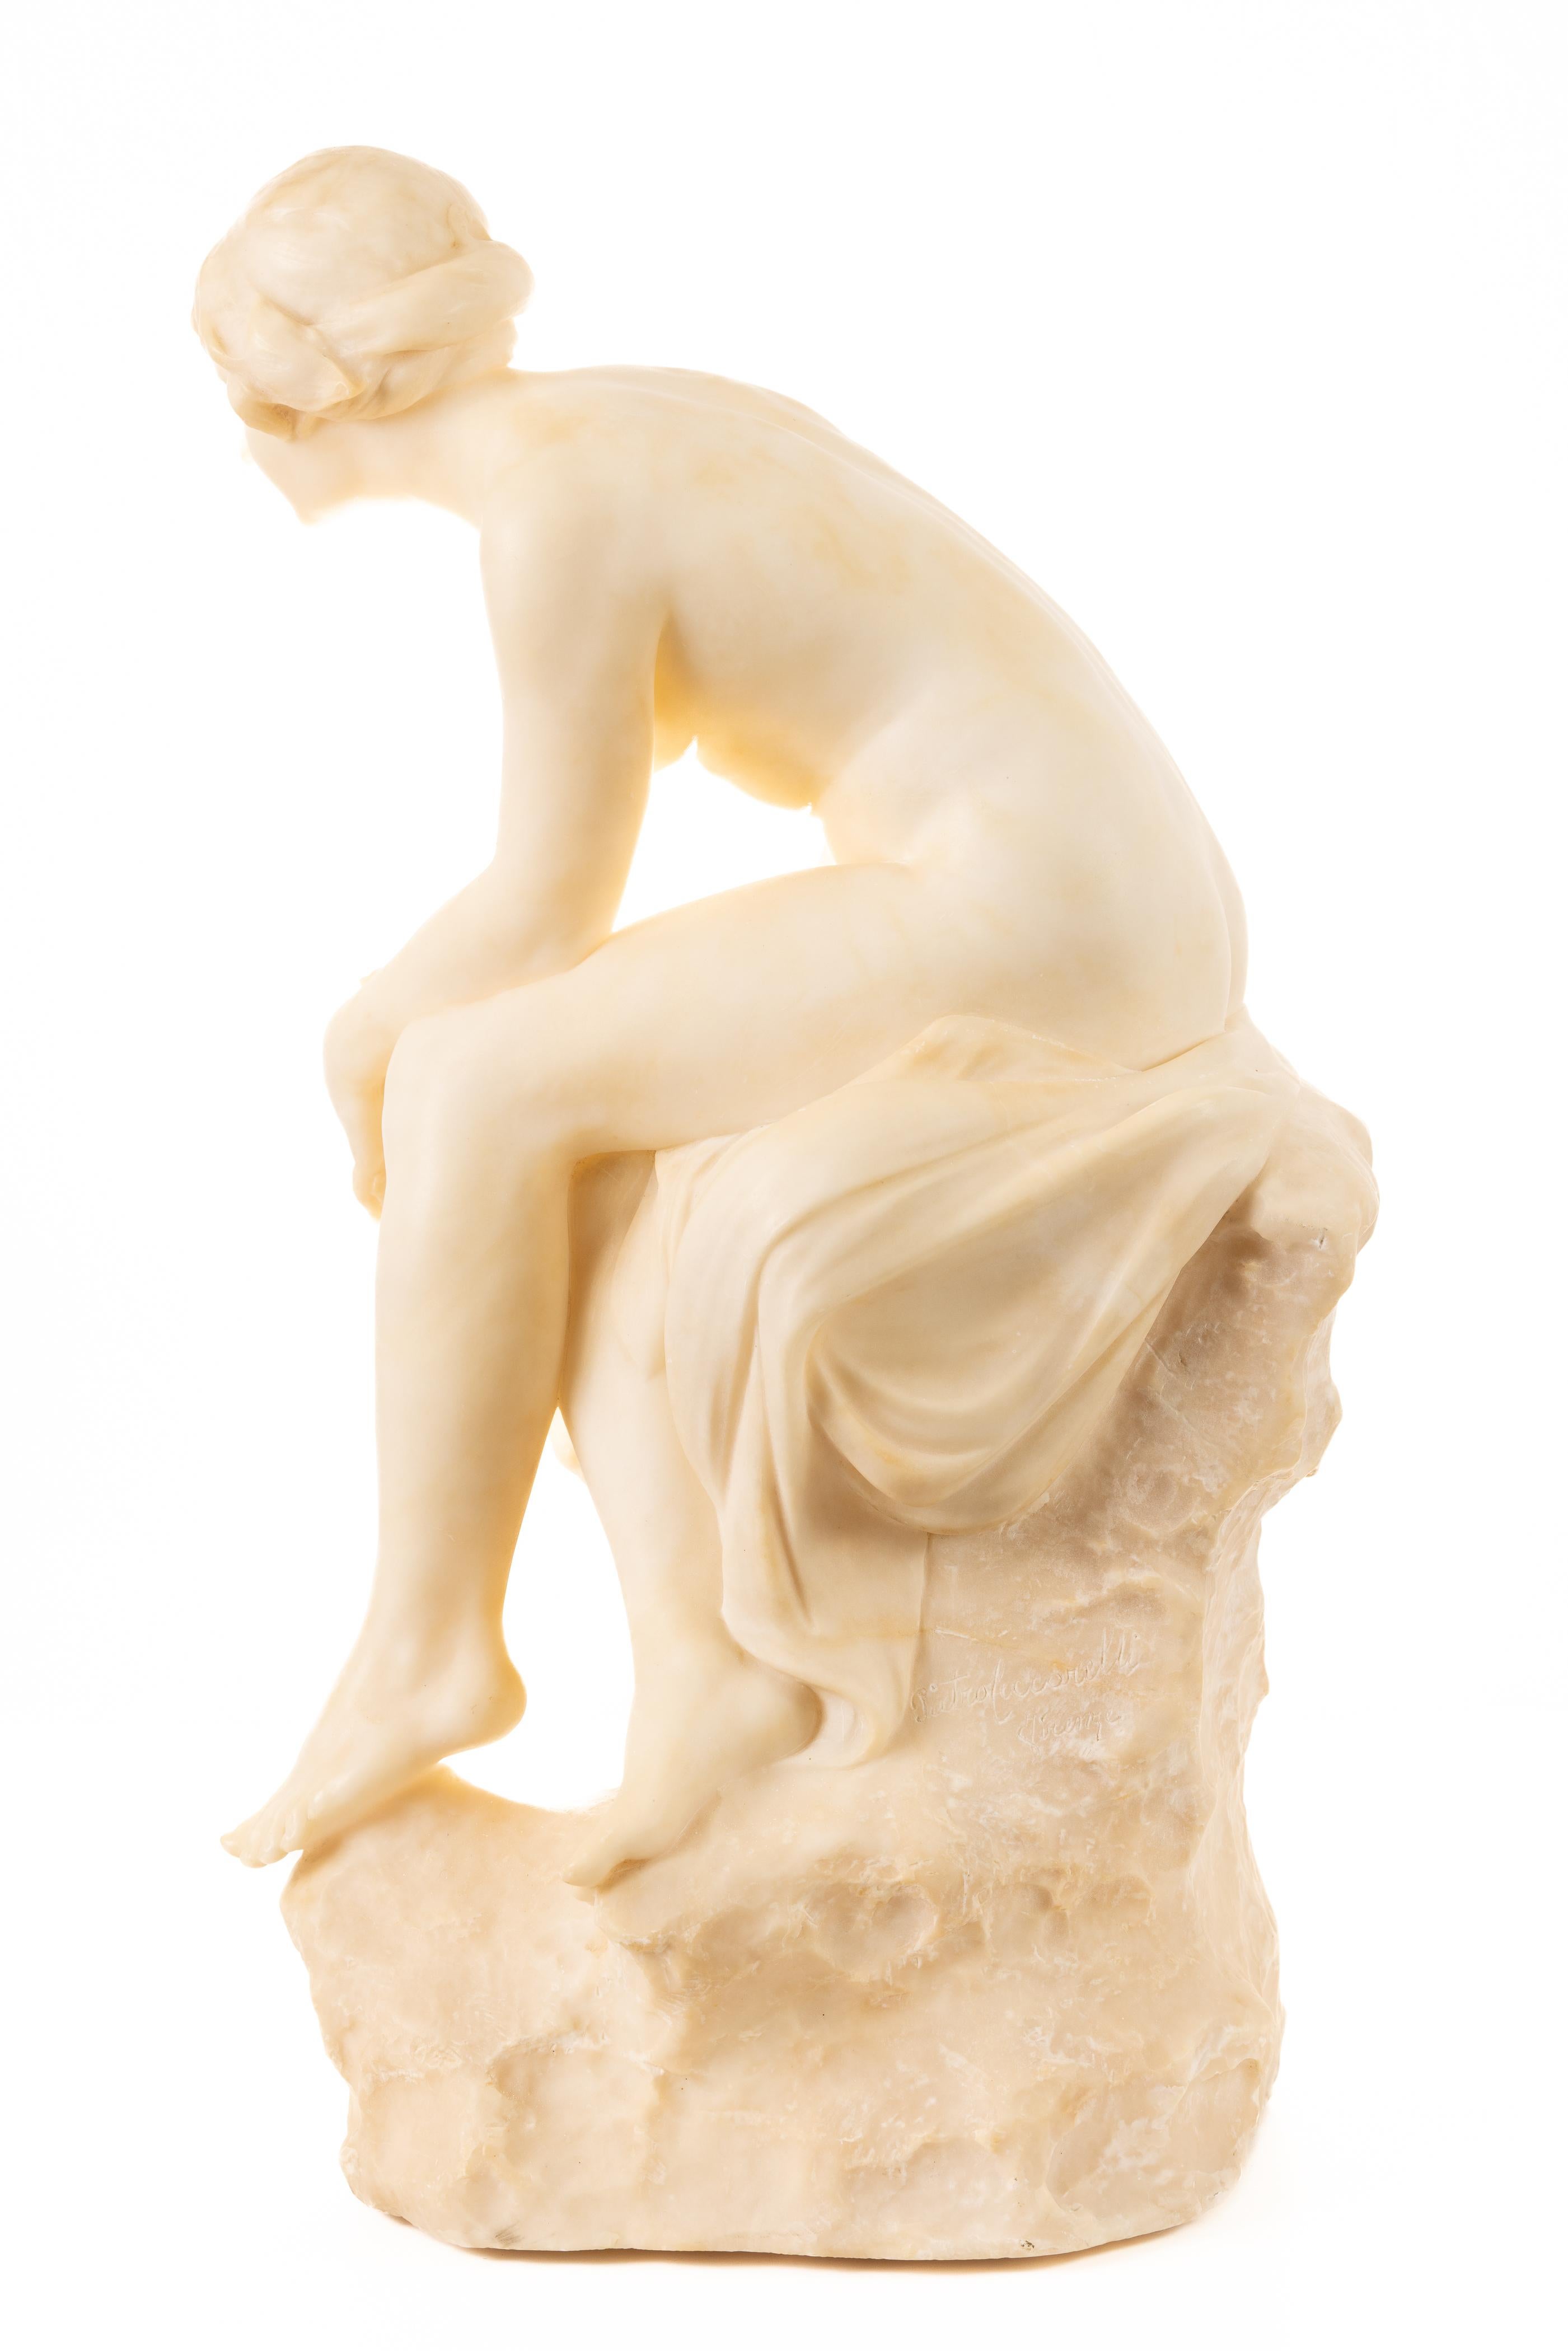 Charmante sculpture en albâtre du début des années 1900 représentant une jeune fille, assise nue sur une souche. Cette œuvre date de la période où l'artiste était actif en Italie. À cette époque, l'œuvre de Ceccarelli était d'inspiration plus